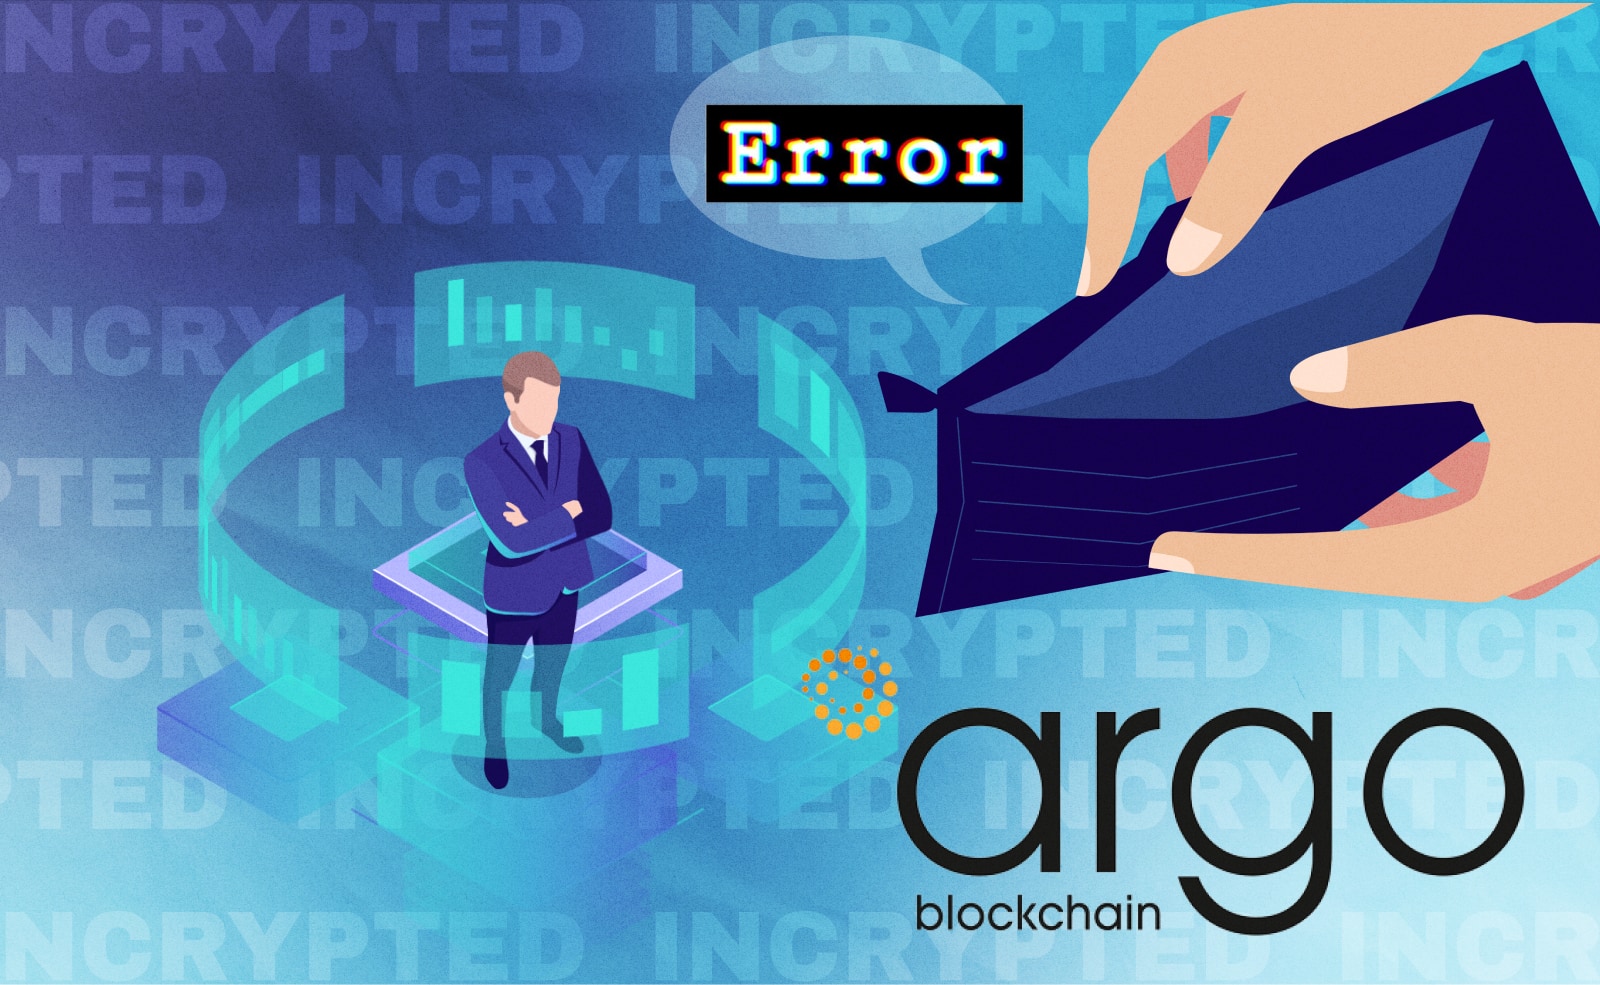 Майнер Argo Blockchain пострадал из-за ошибки в материалах. Они якобы «случайно» опубликовали новость о своем банкротстве